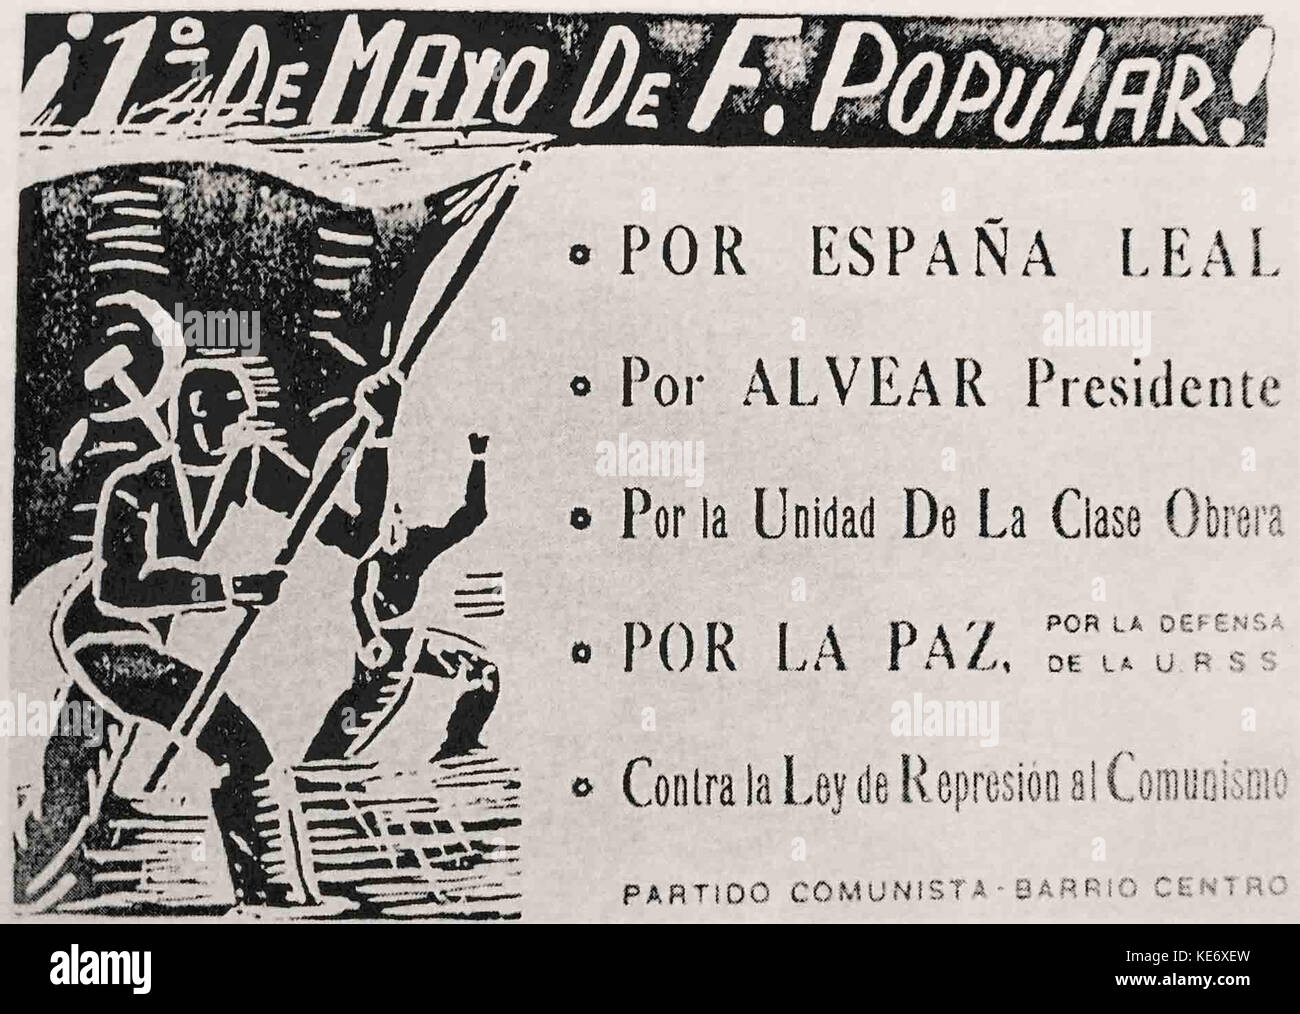 De 1937 Cartel partidario del Partido Comunista Banque D'Images